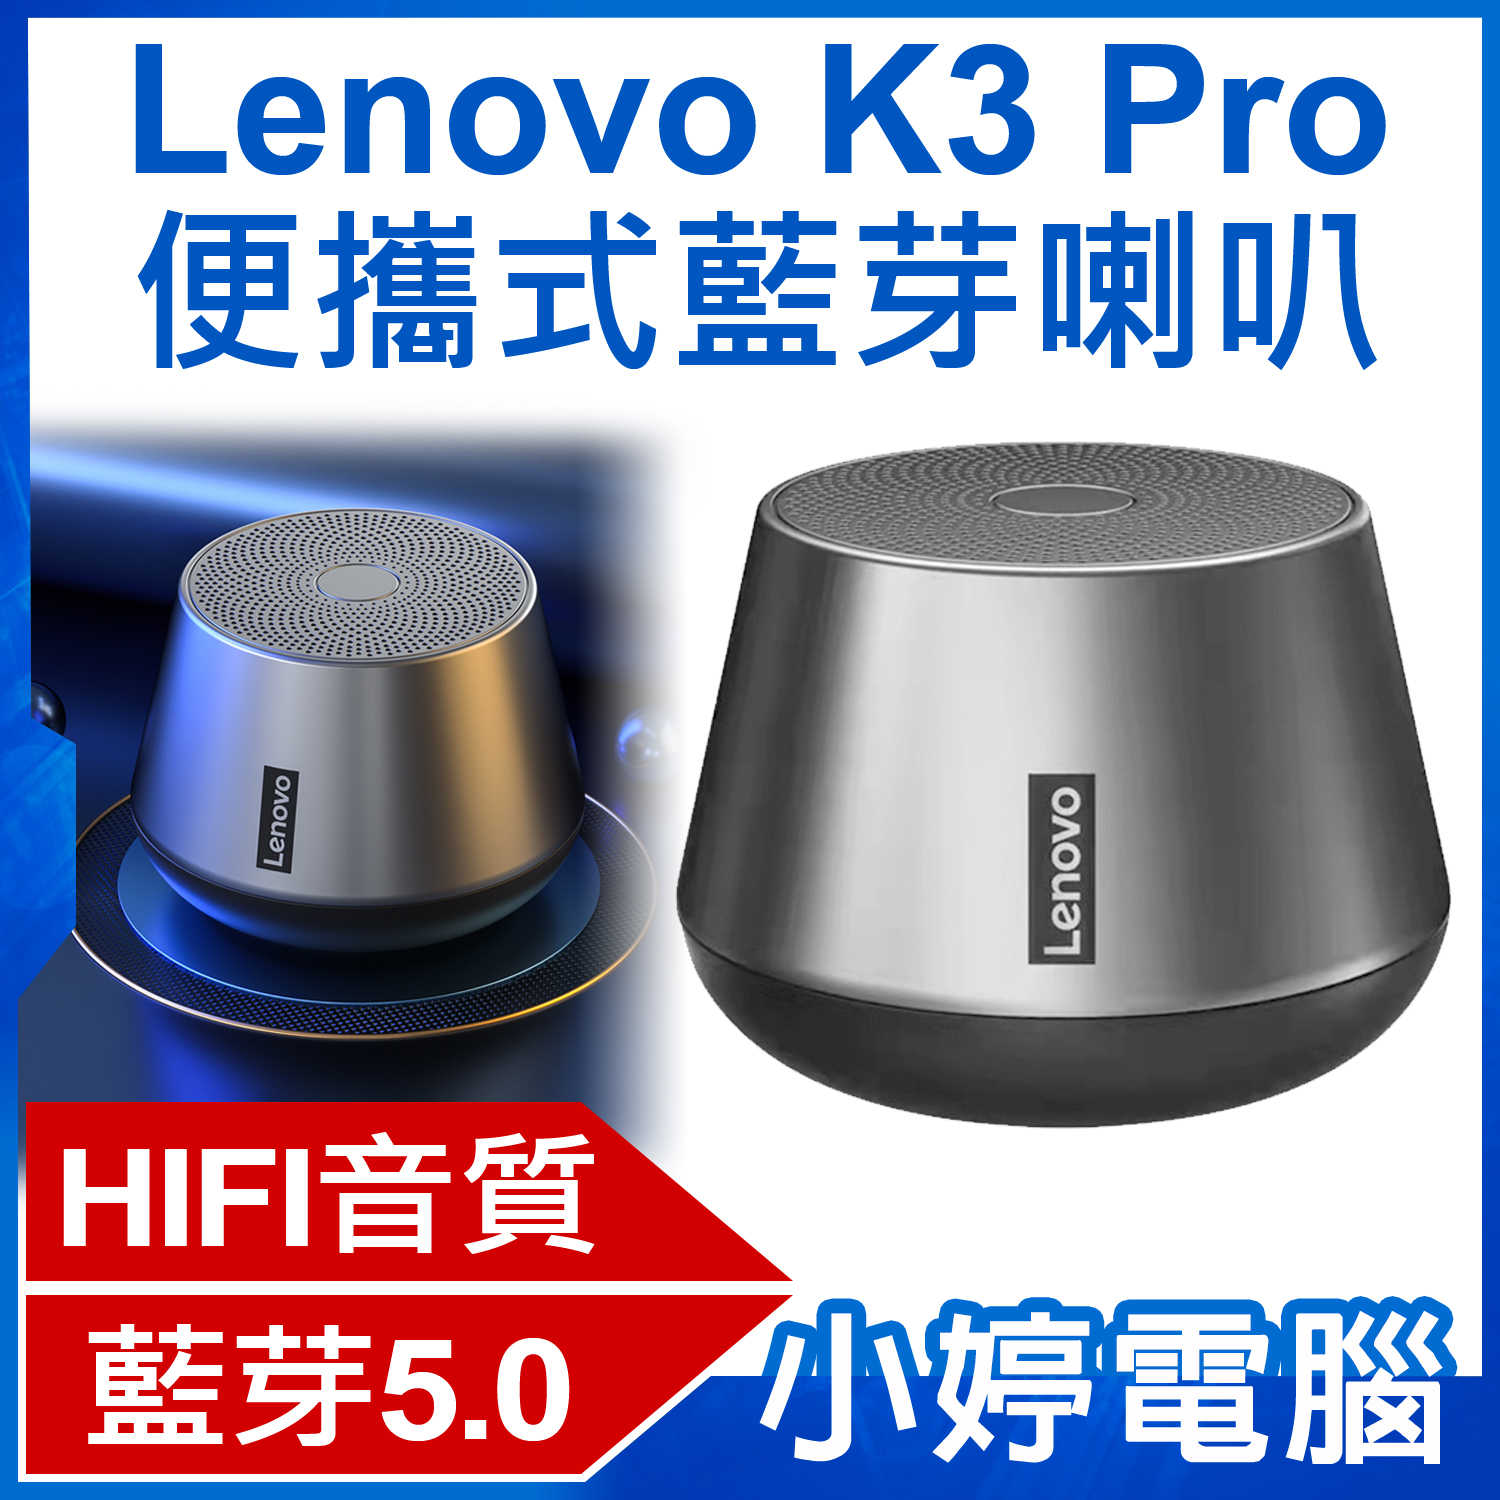 【小婷電腦】Lenovo K3 Pro 便攜式藍芽喇叭 TWS雙喇叭串聯 HIFI音質 免持通話 迷你輕巧